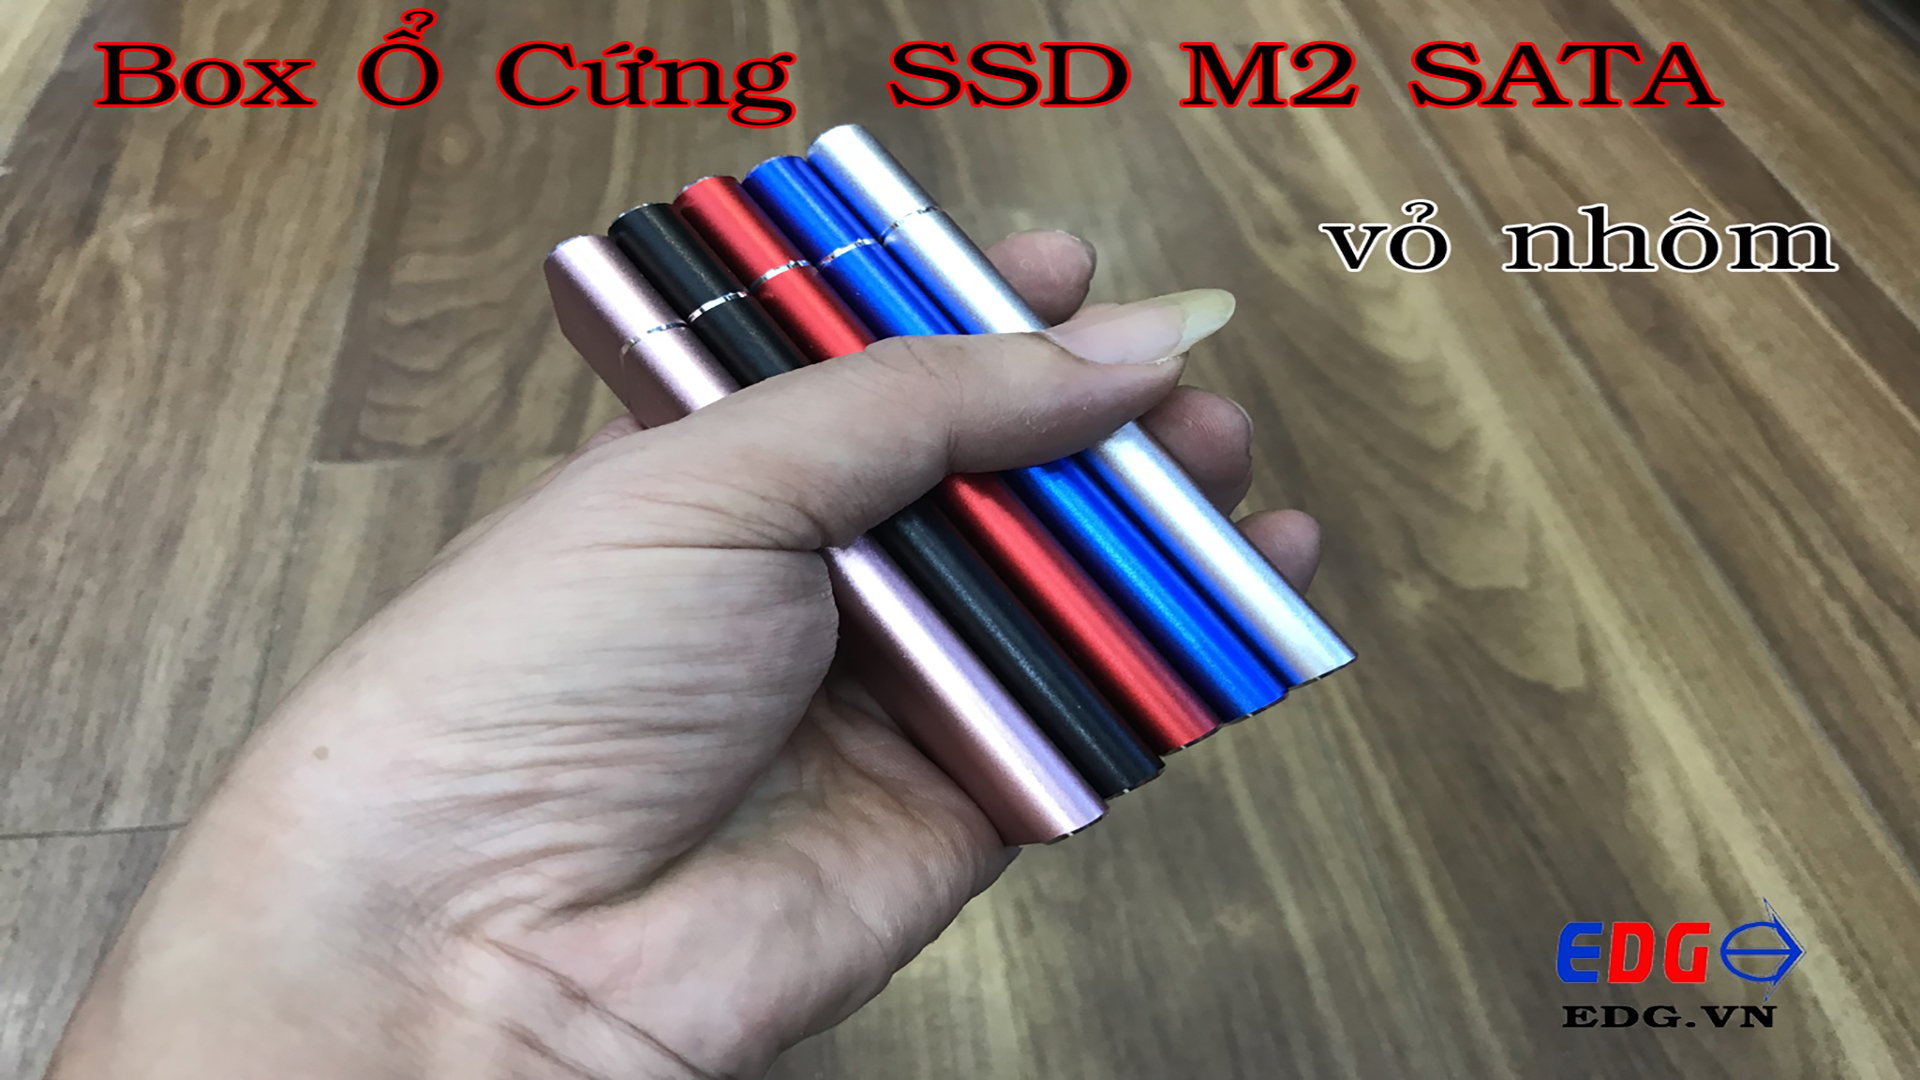 Box SSD M2 SATA vỏ nhôm ngon luôn , nhiều màu đẹp